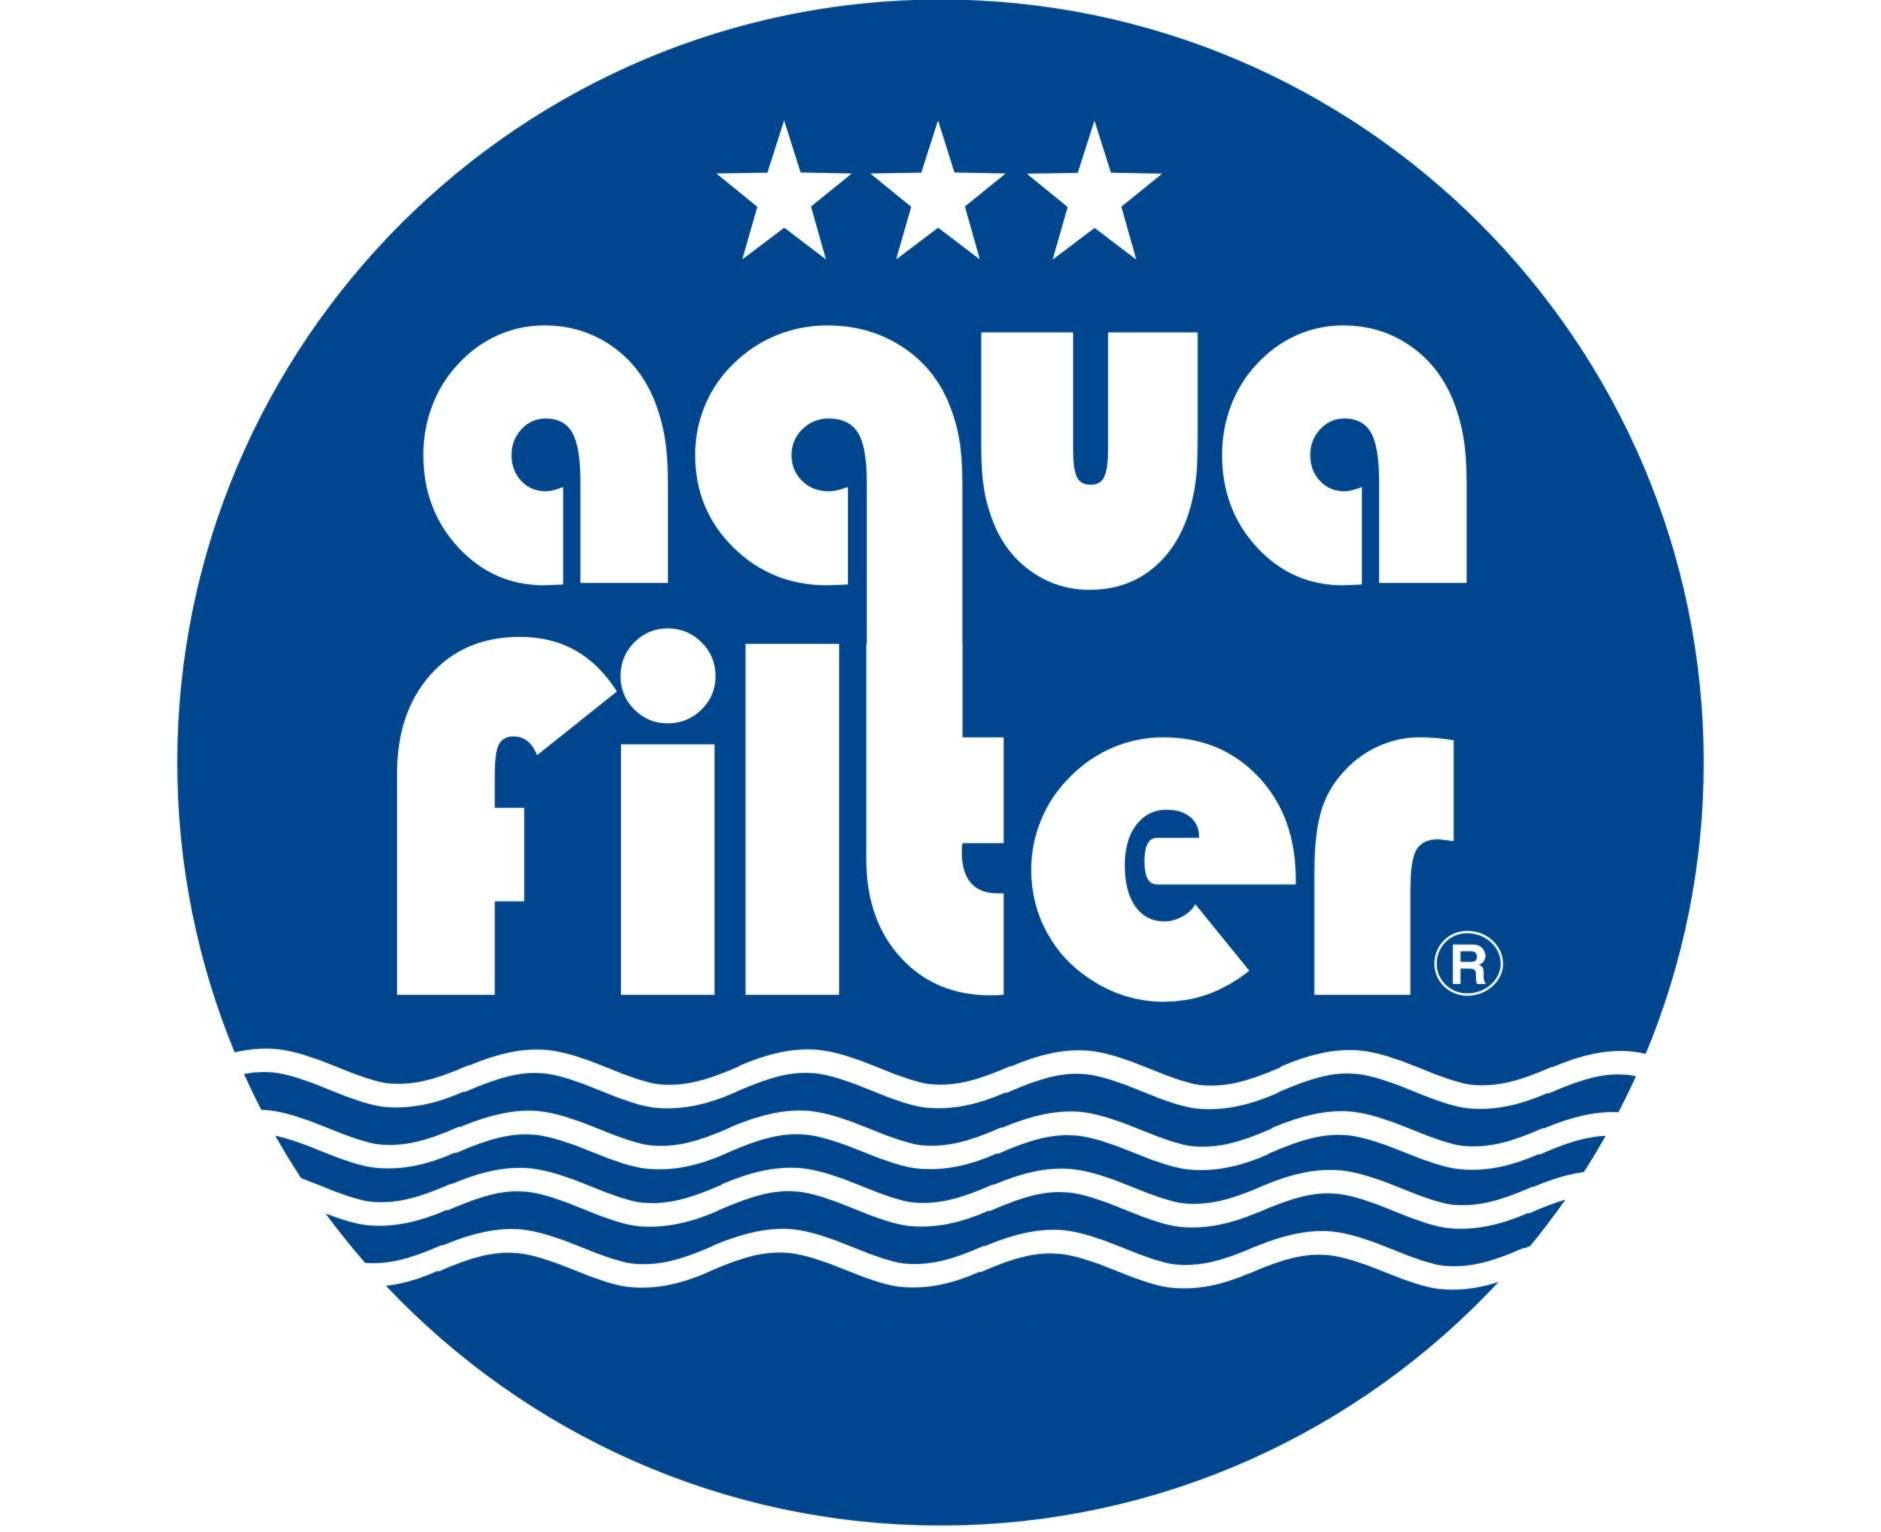 Aqua Filter logo